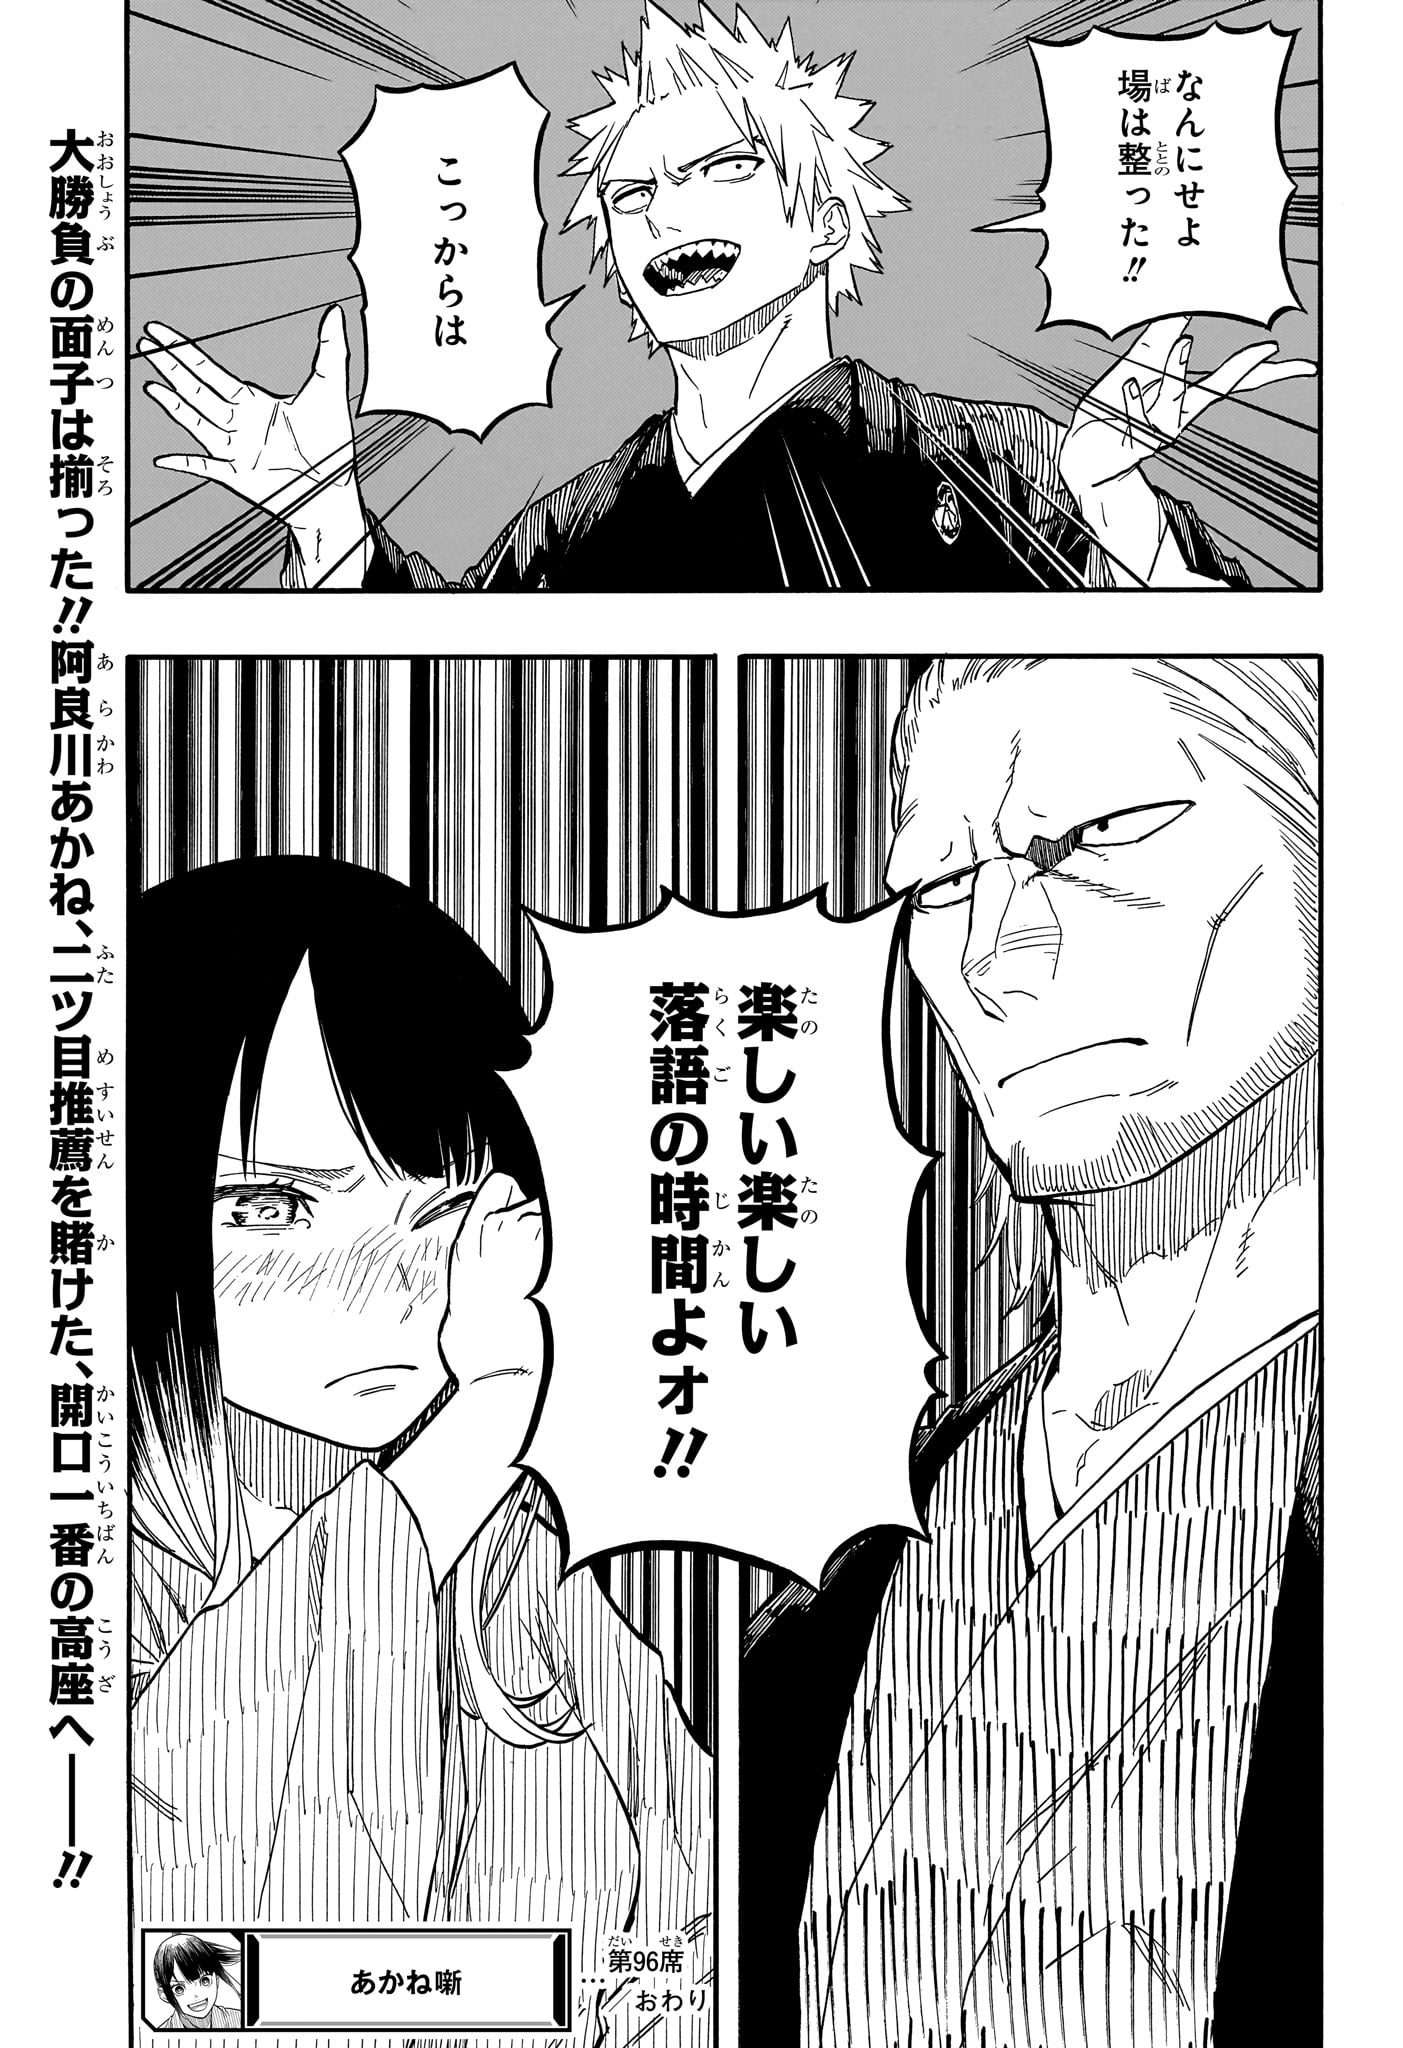 Akane-Banashi - Chapter 96 - Page 19